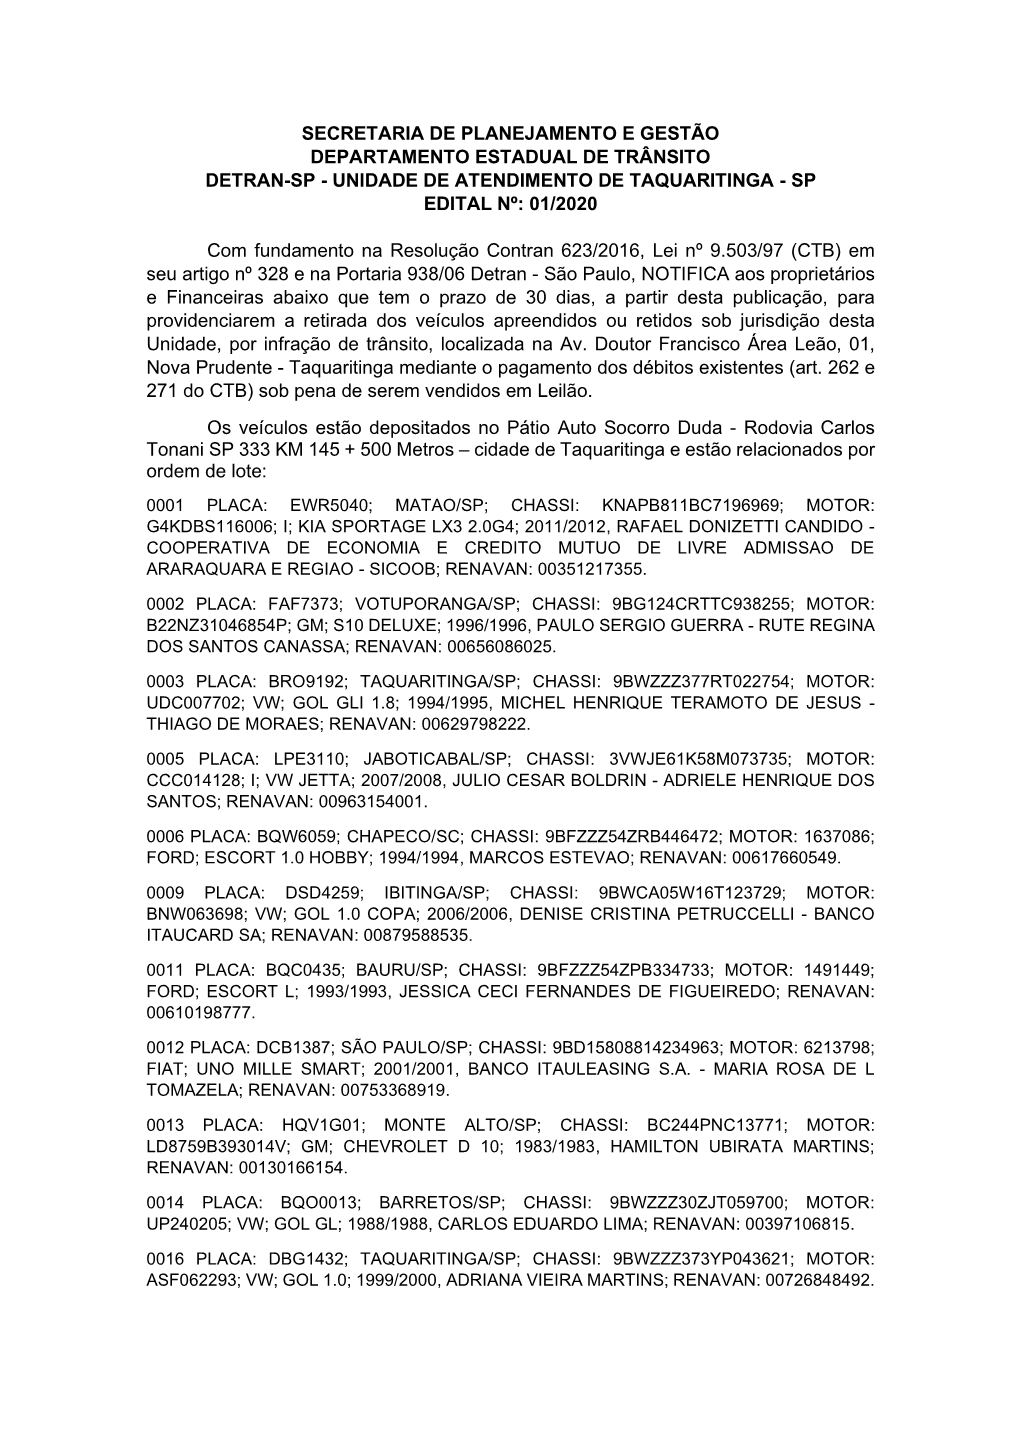 Unidade De Atendimento De Taquaritinga - Sp Edital Nº: 01/2020